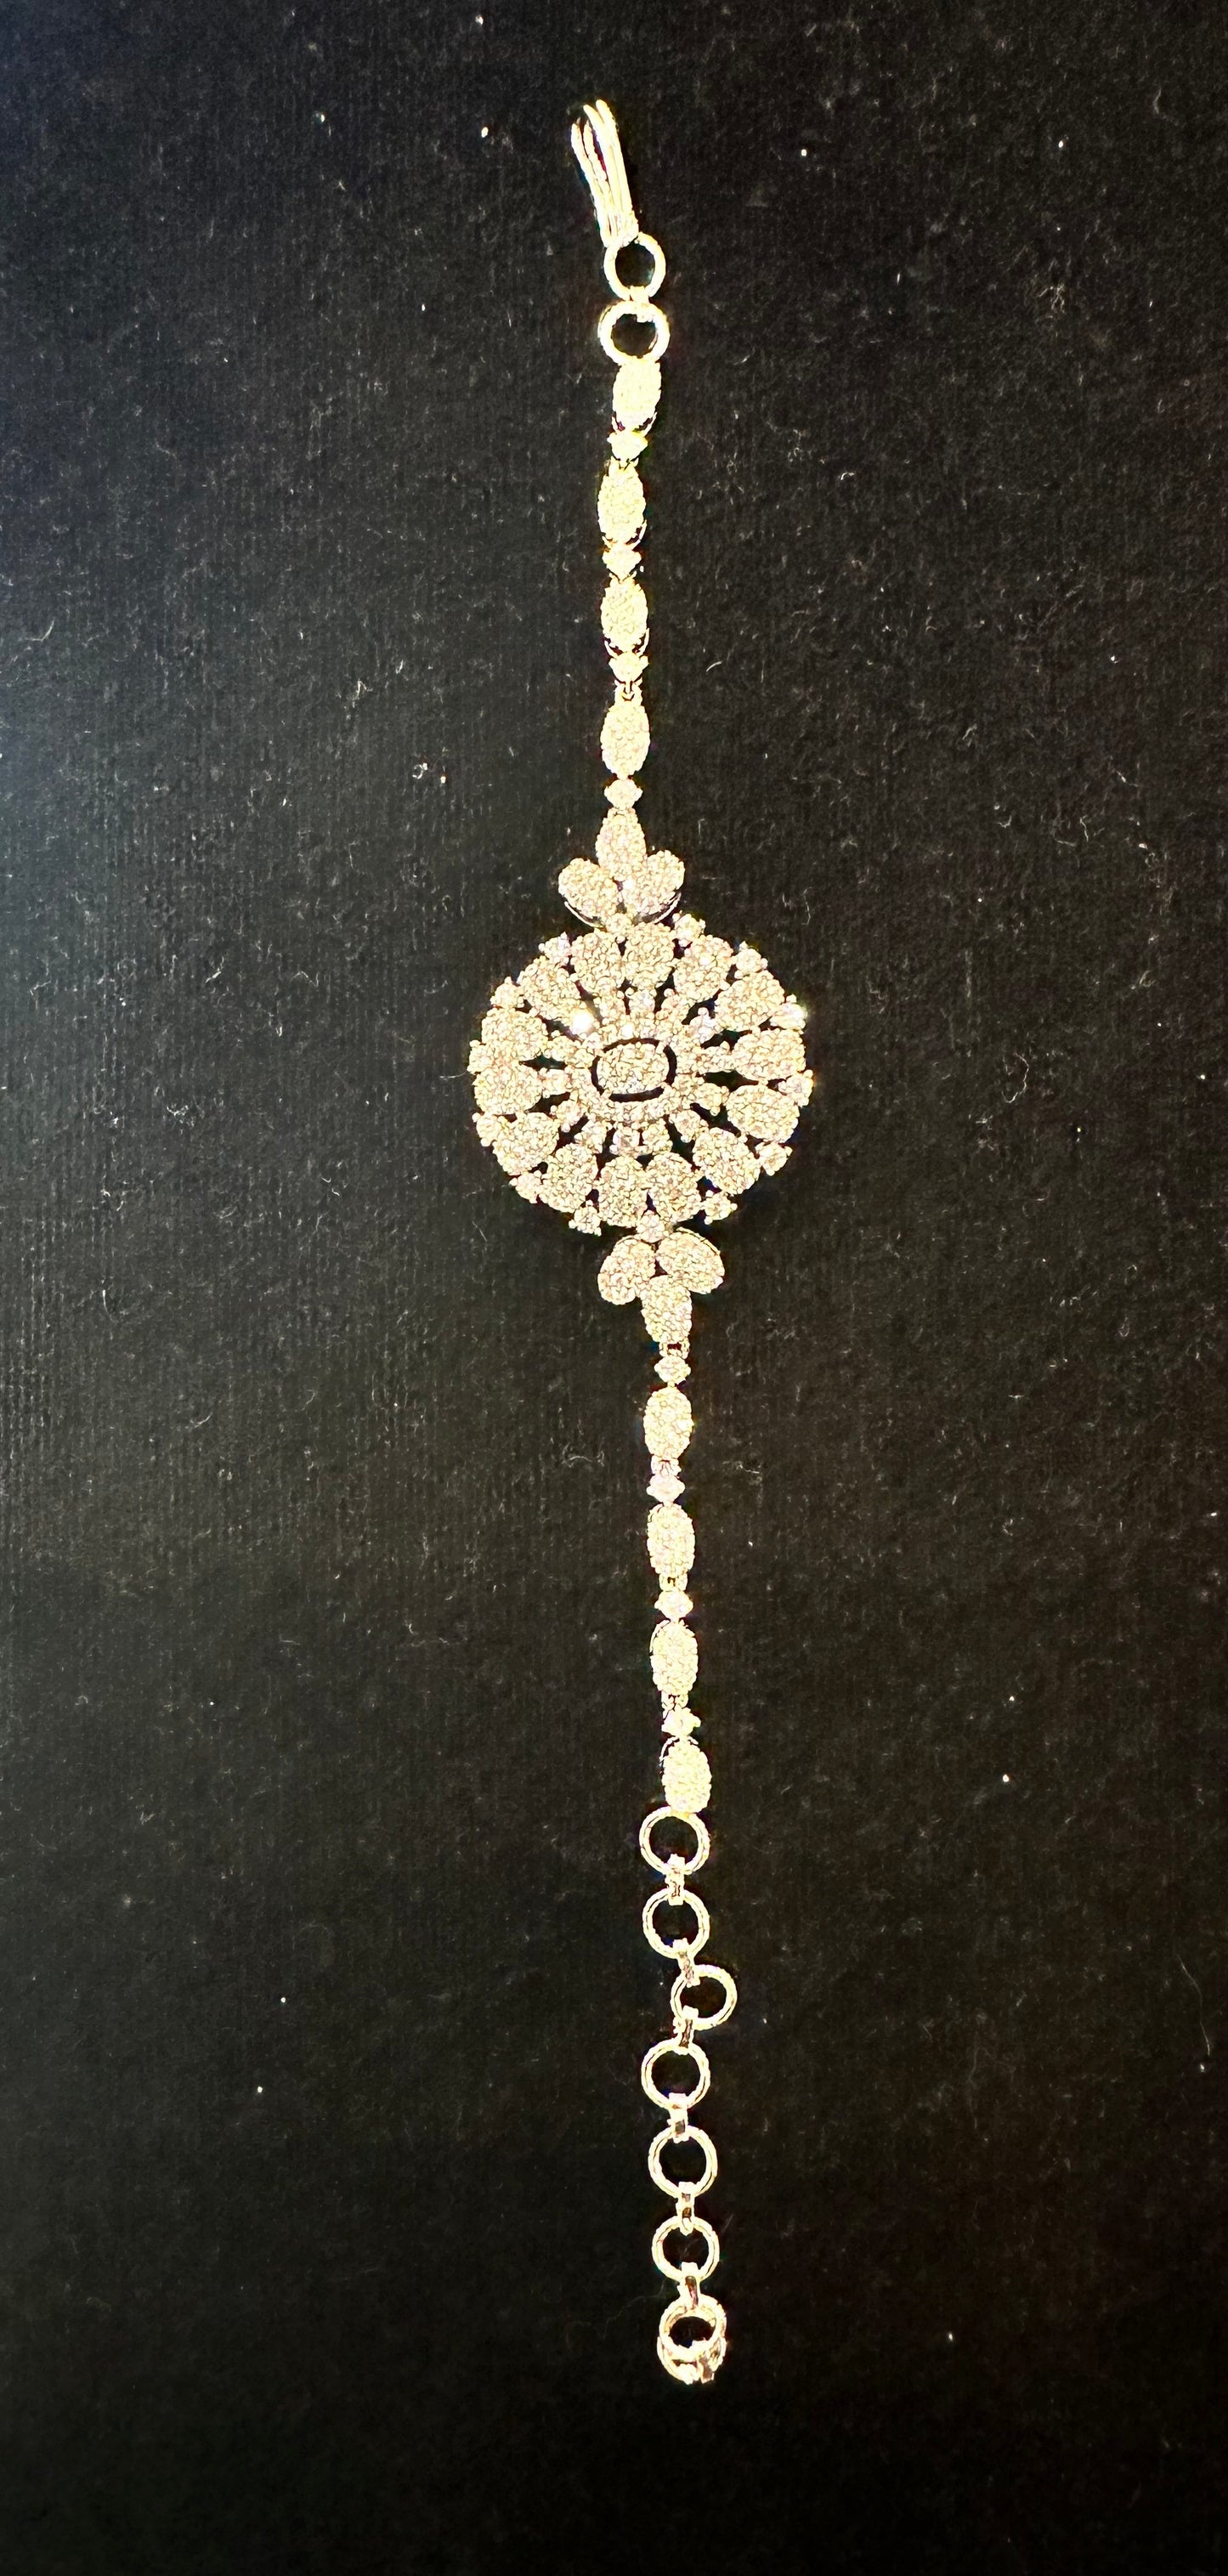 Plain silver 4 piece (necklace,earrings,ring,bracelet)long necklace set